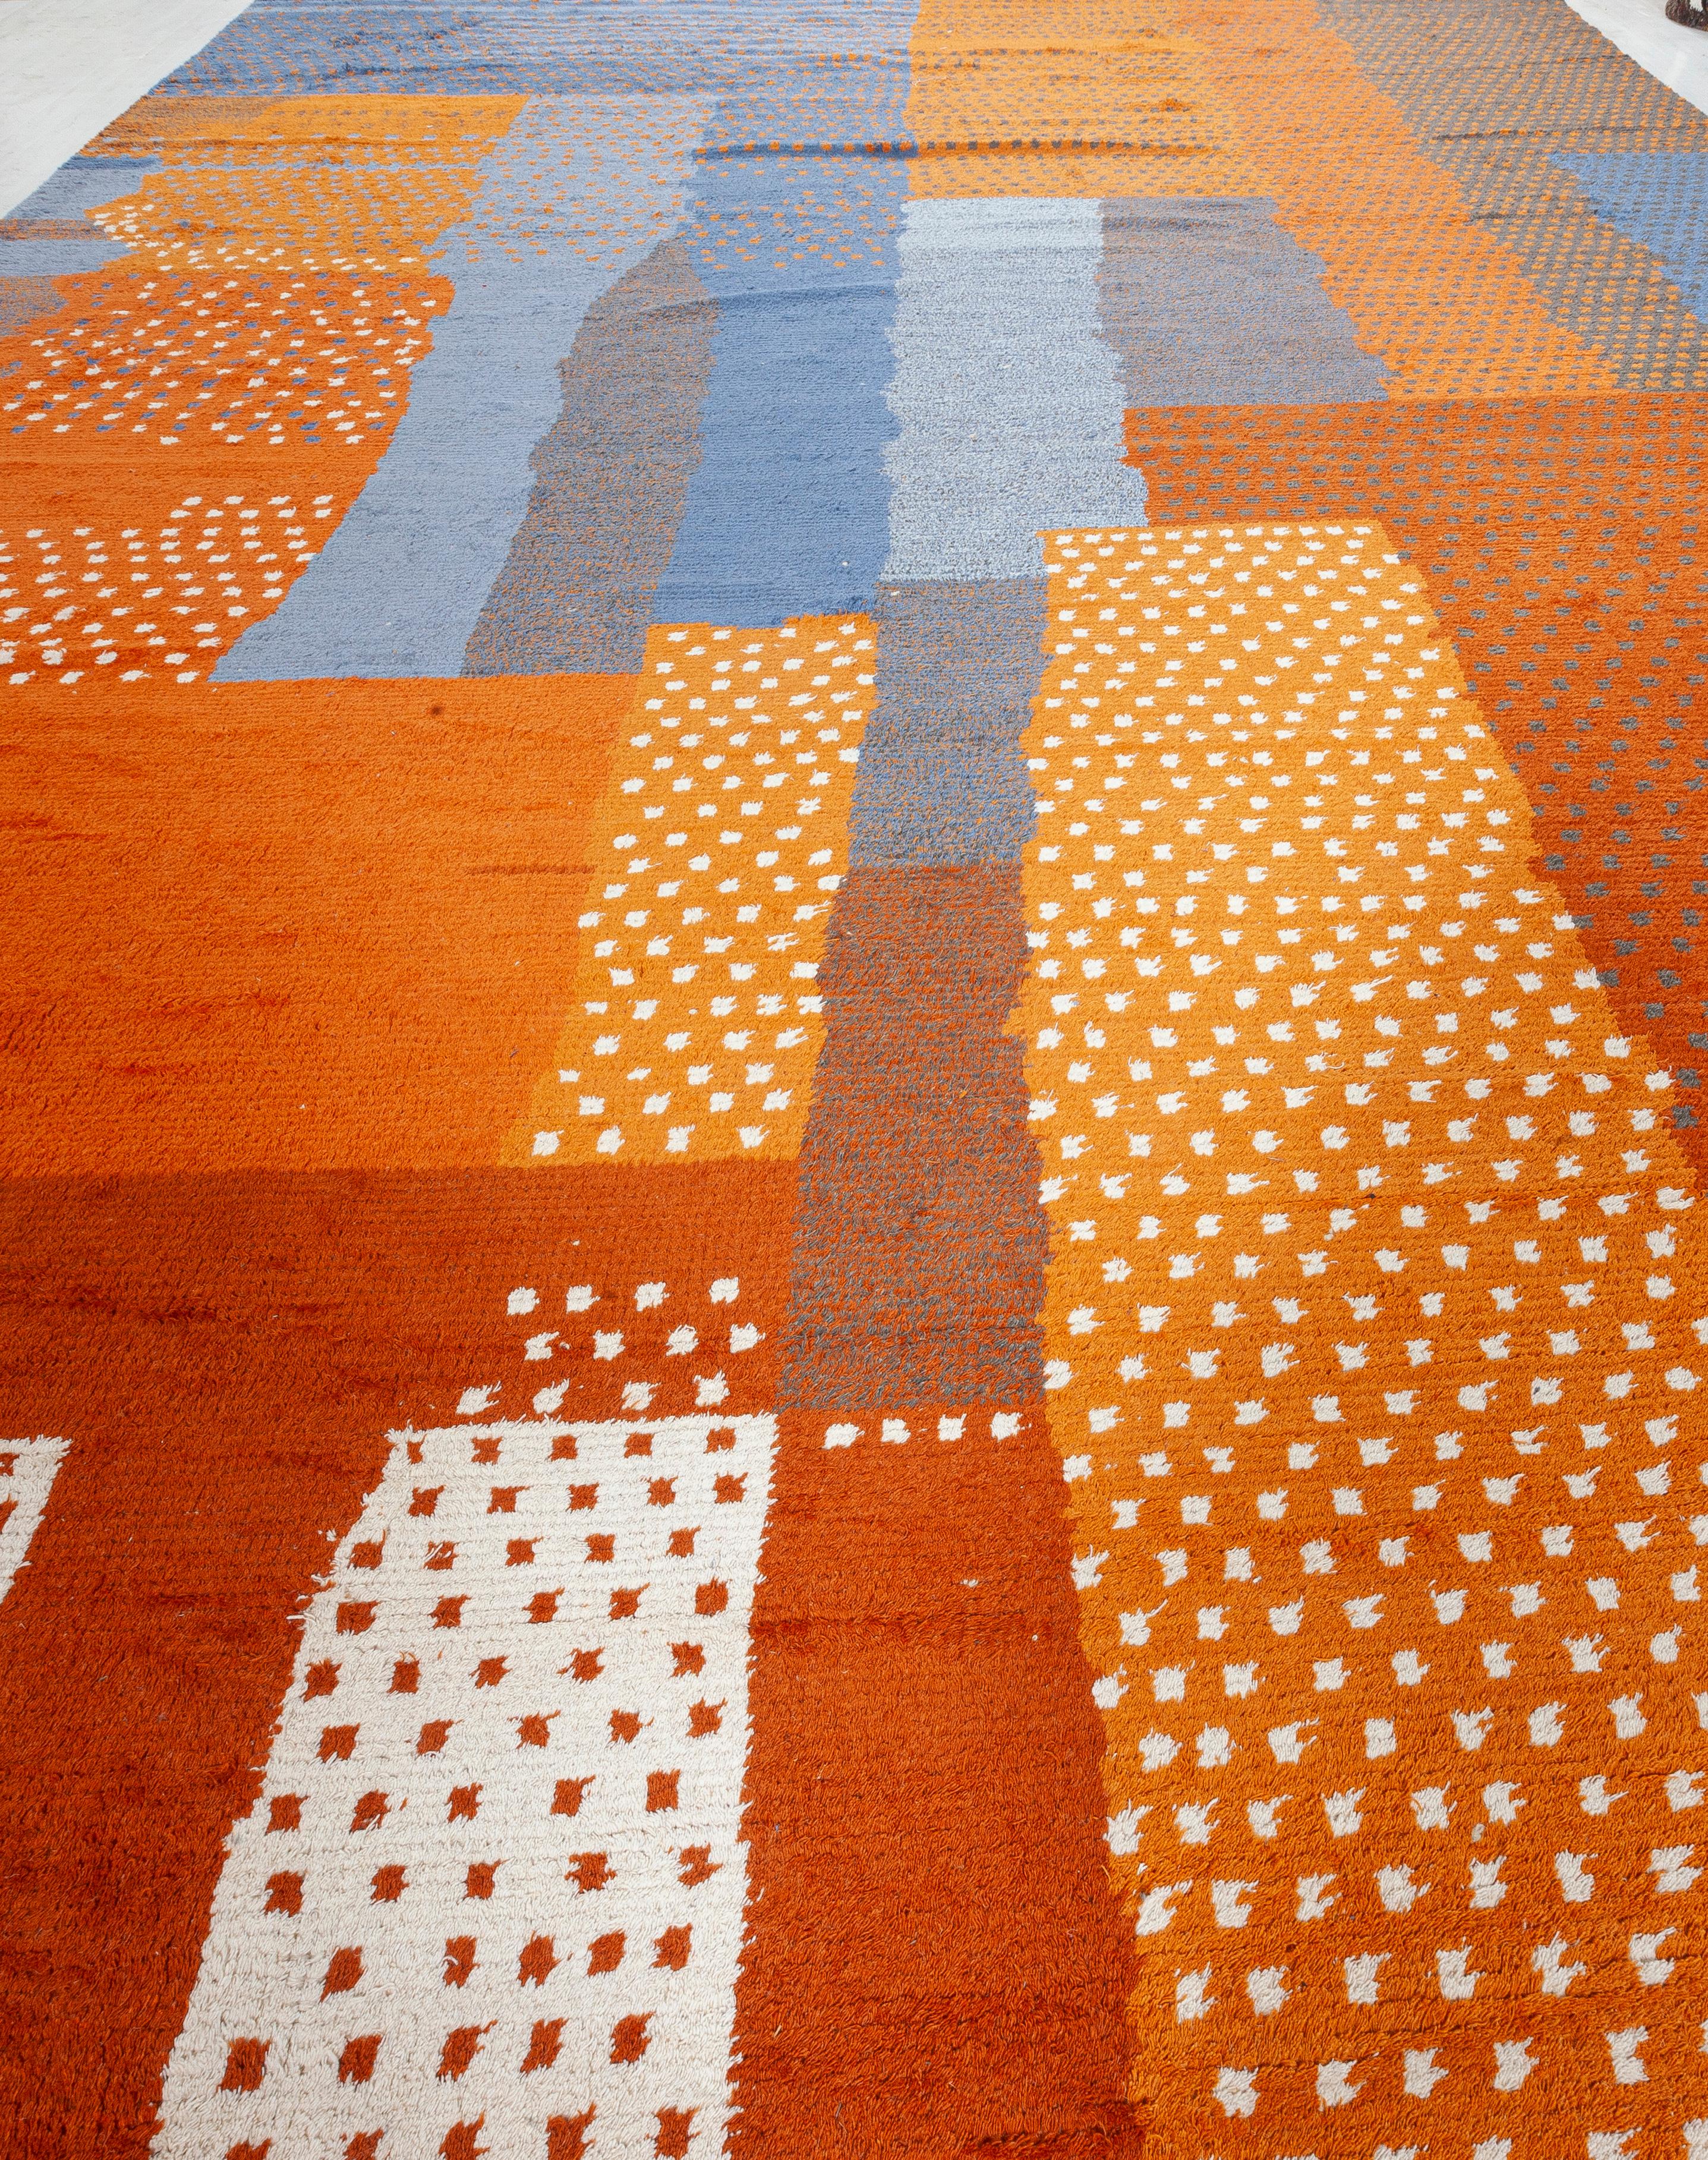 Neuer marokkanisch inspirierter Teppich von Doris Leslie Blau
Größe: 14'2